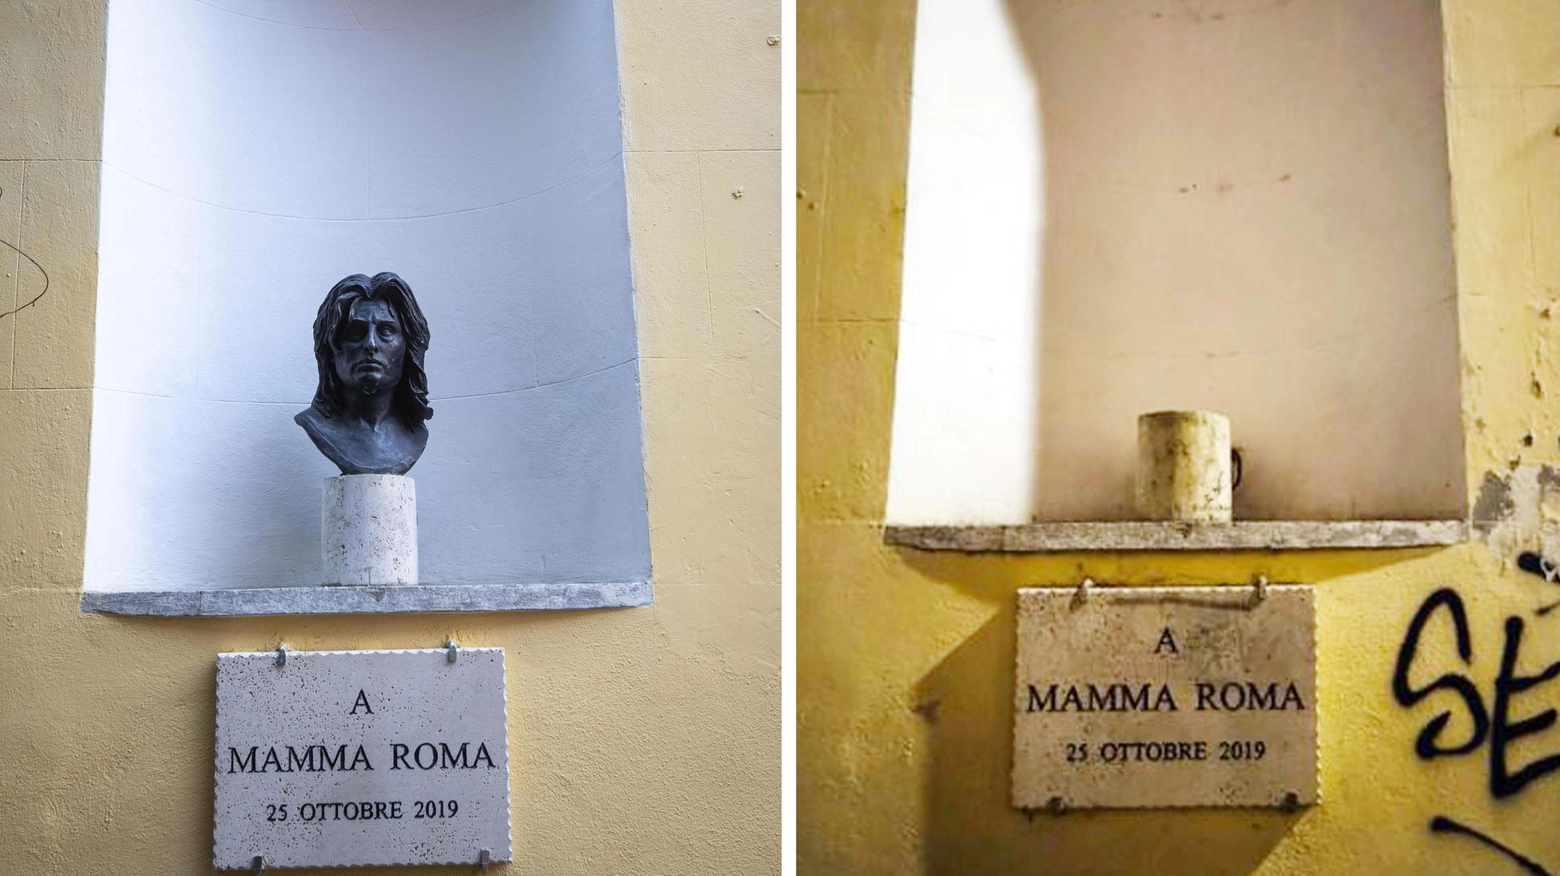 Il busto di Anna Magnani è stato divelto nella notte